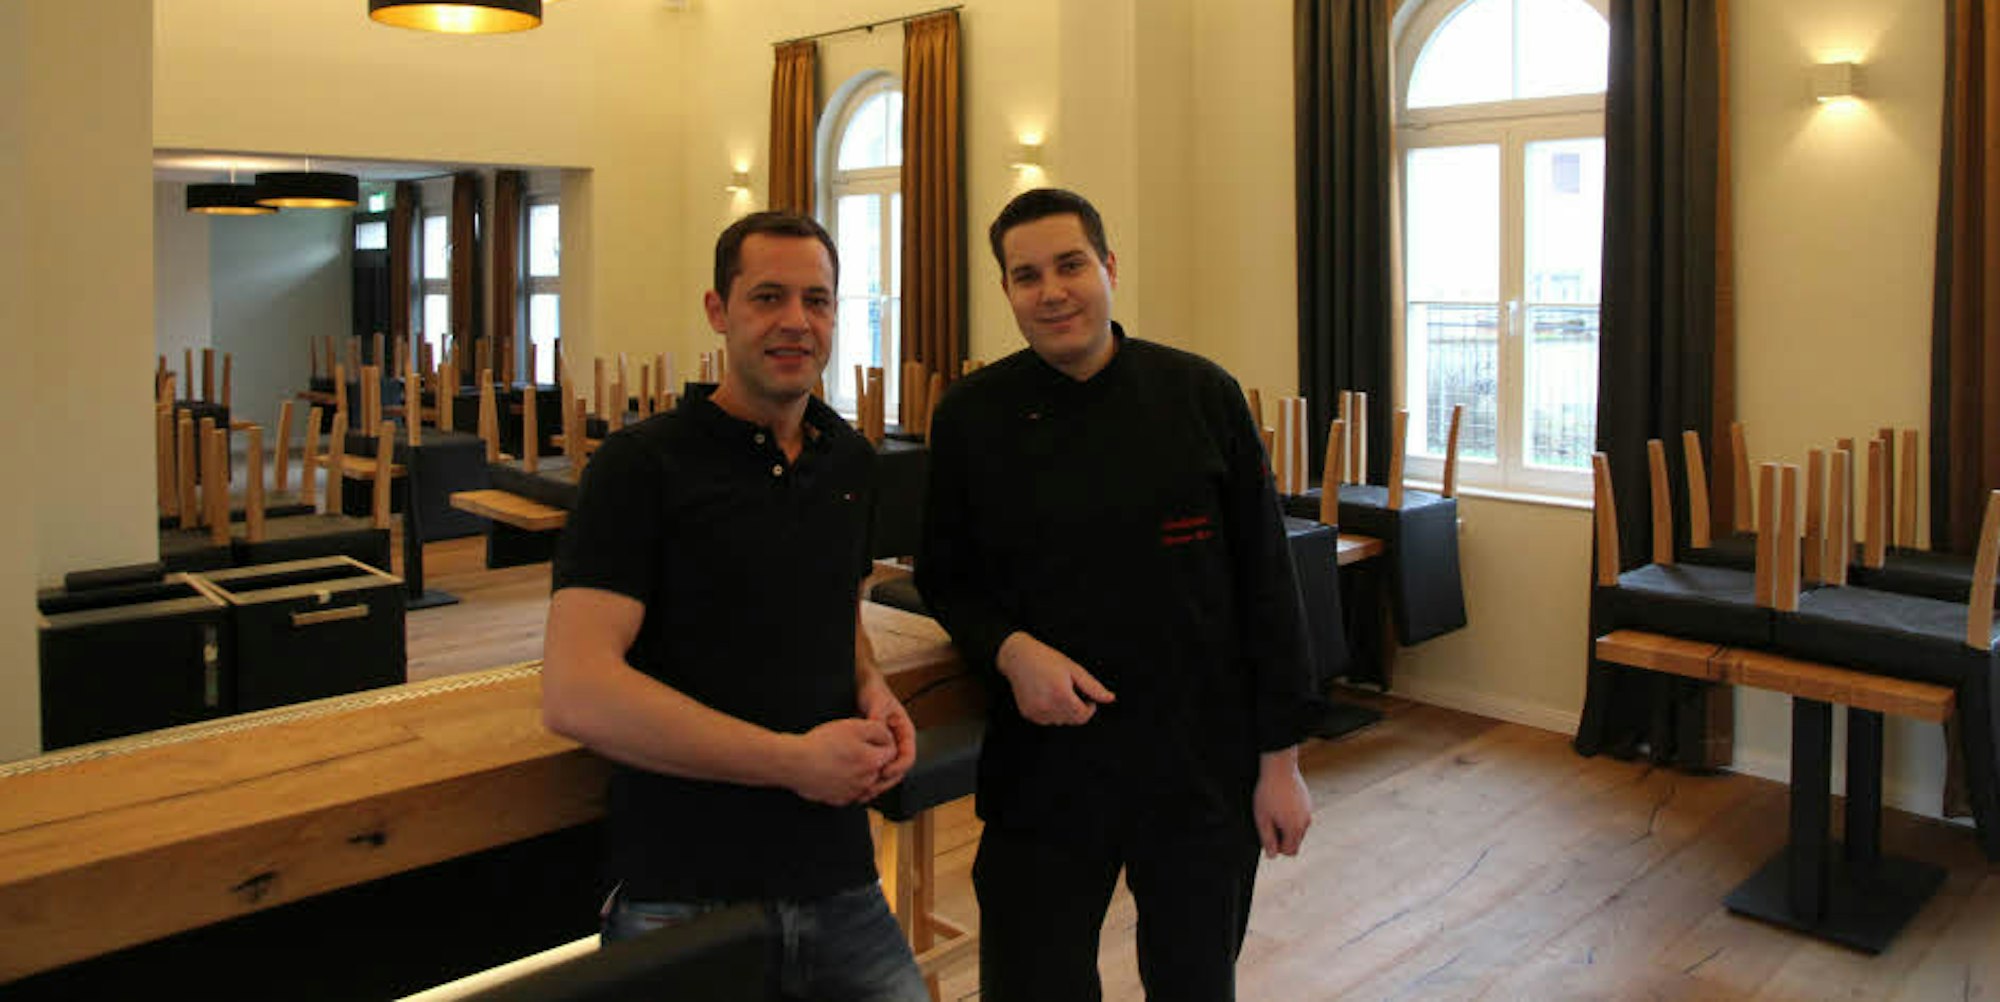 Nach langen Jahren des Leerstands im Nordbahnhof stehen Robert (links) und Alexander Rossa vor der Eröffnung ihres Restaurants.